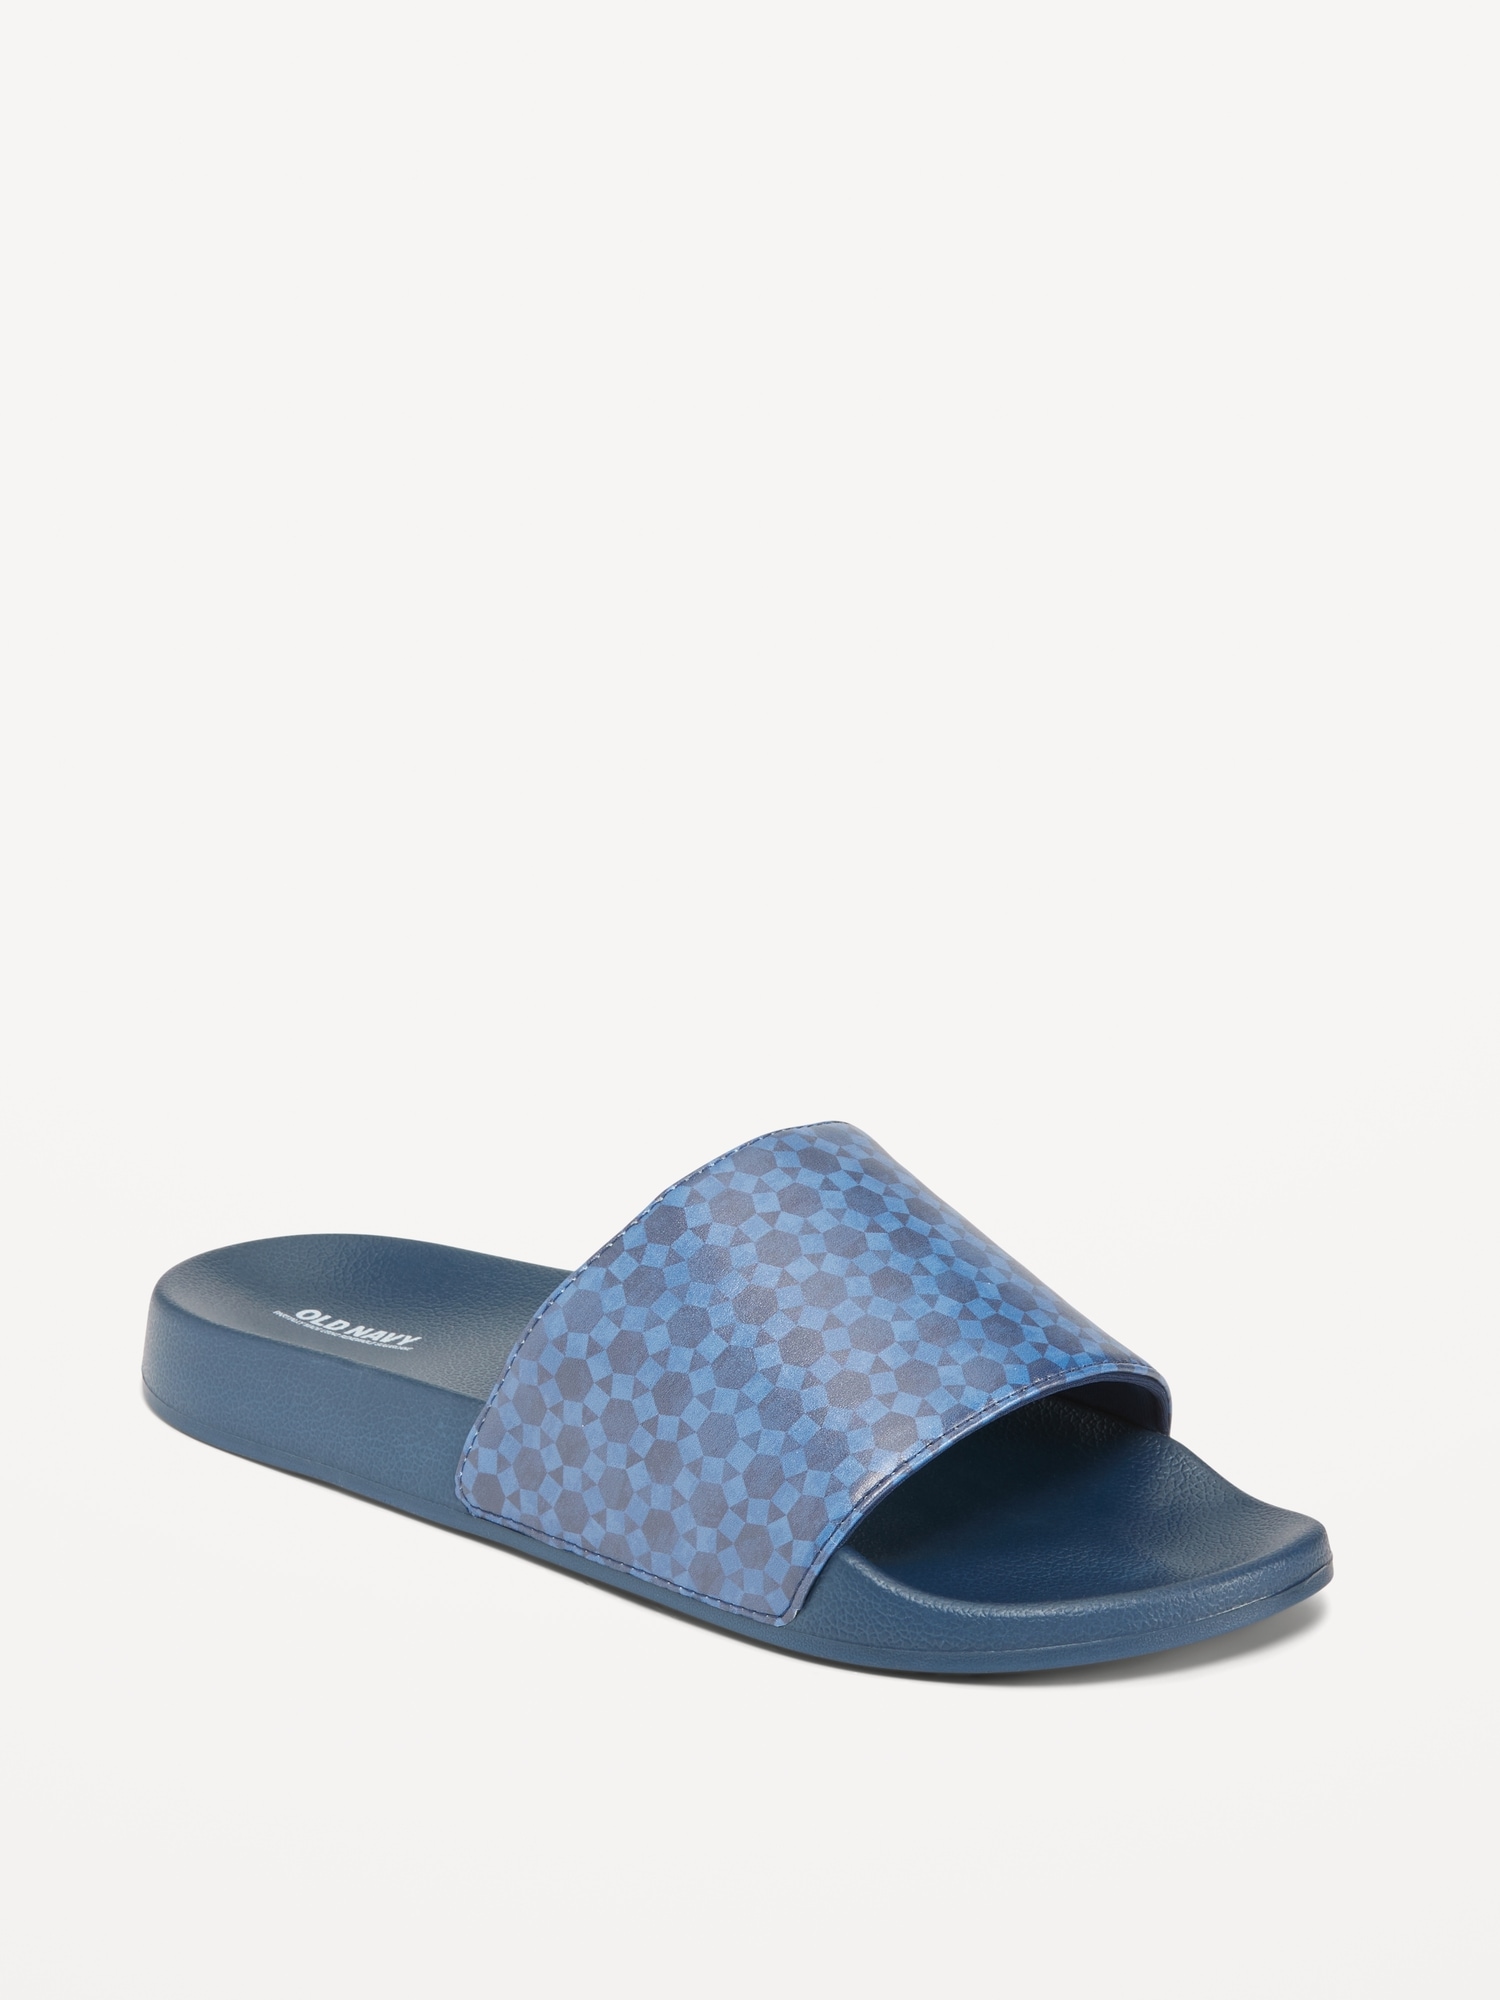 Old Navy Printed Sugarcane-Based Slide Sandals for Men (Partially Plant-Based) blue. 1